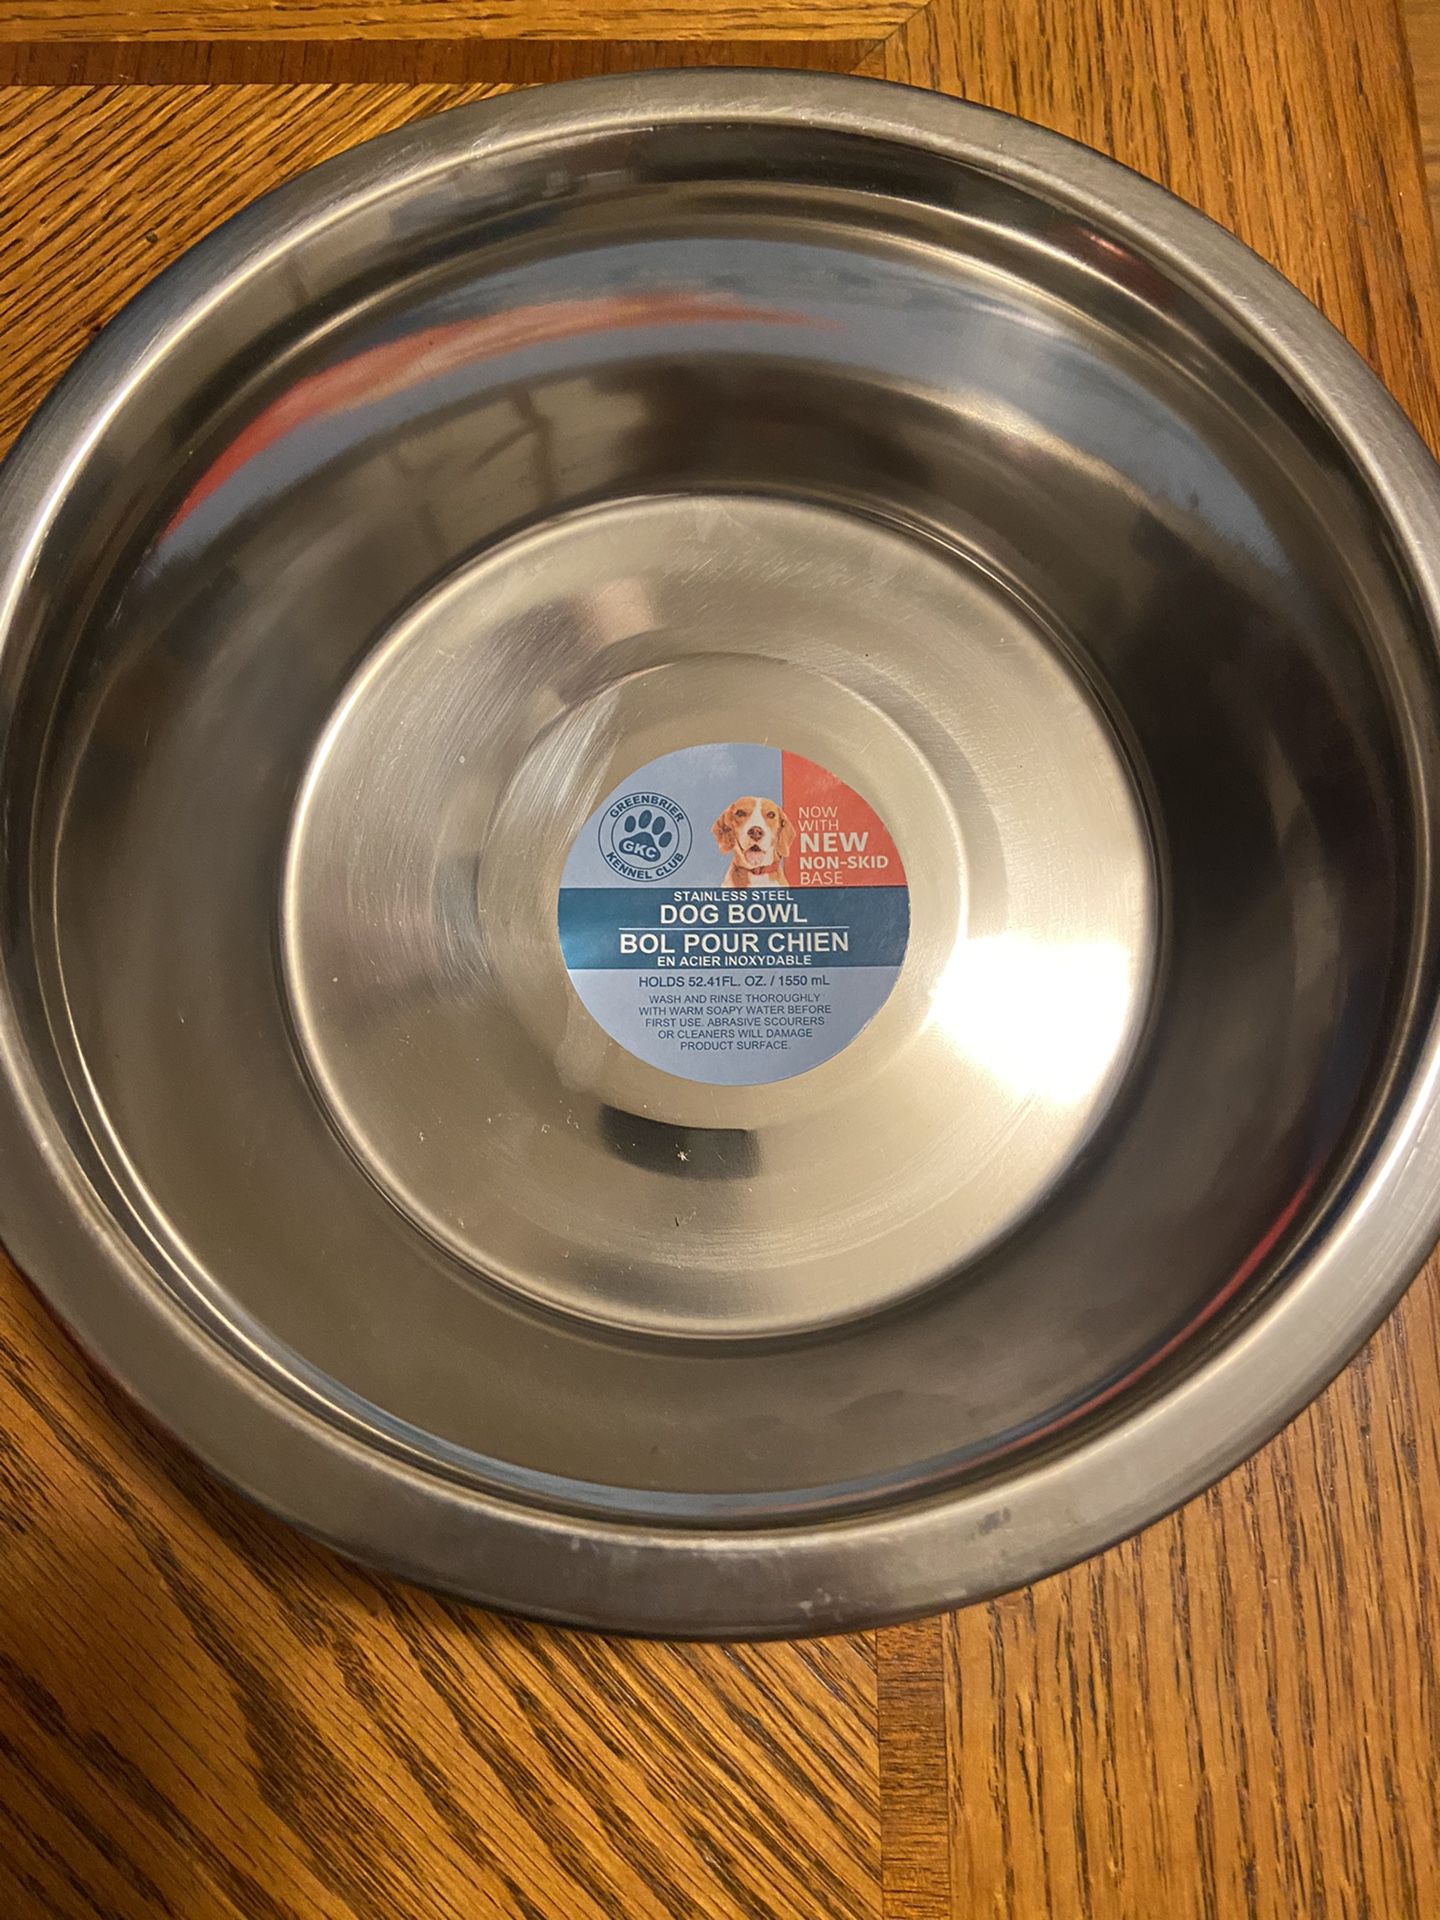 Dog bowl 52.41 fl oz 8 inches wide